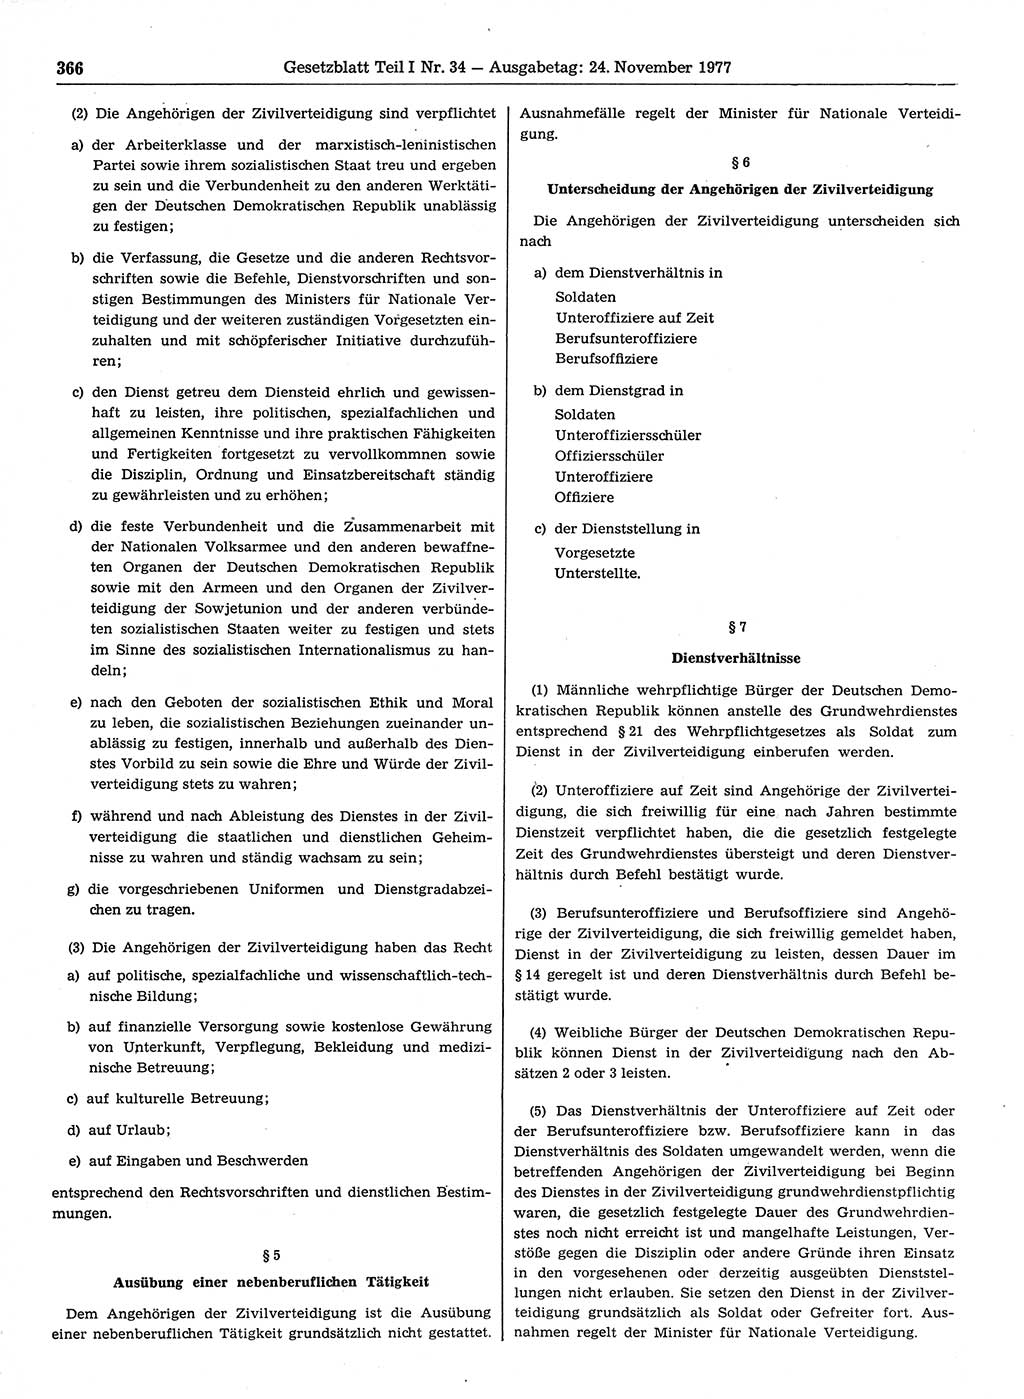 Gesetzblatt (GBl.) der Deutschen Demokratischen Republik (DDR) Teil Ⅰ 1977, Seite 366 (GBl. DDR Ⅰ 1977, S. 366)